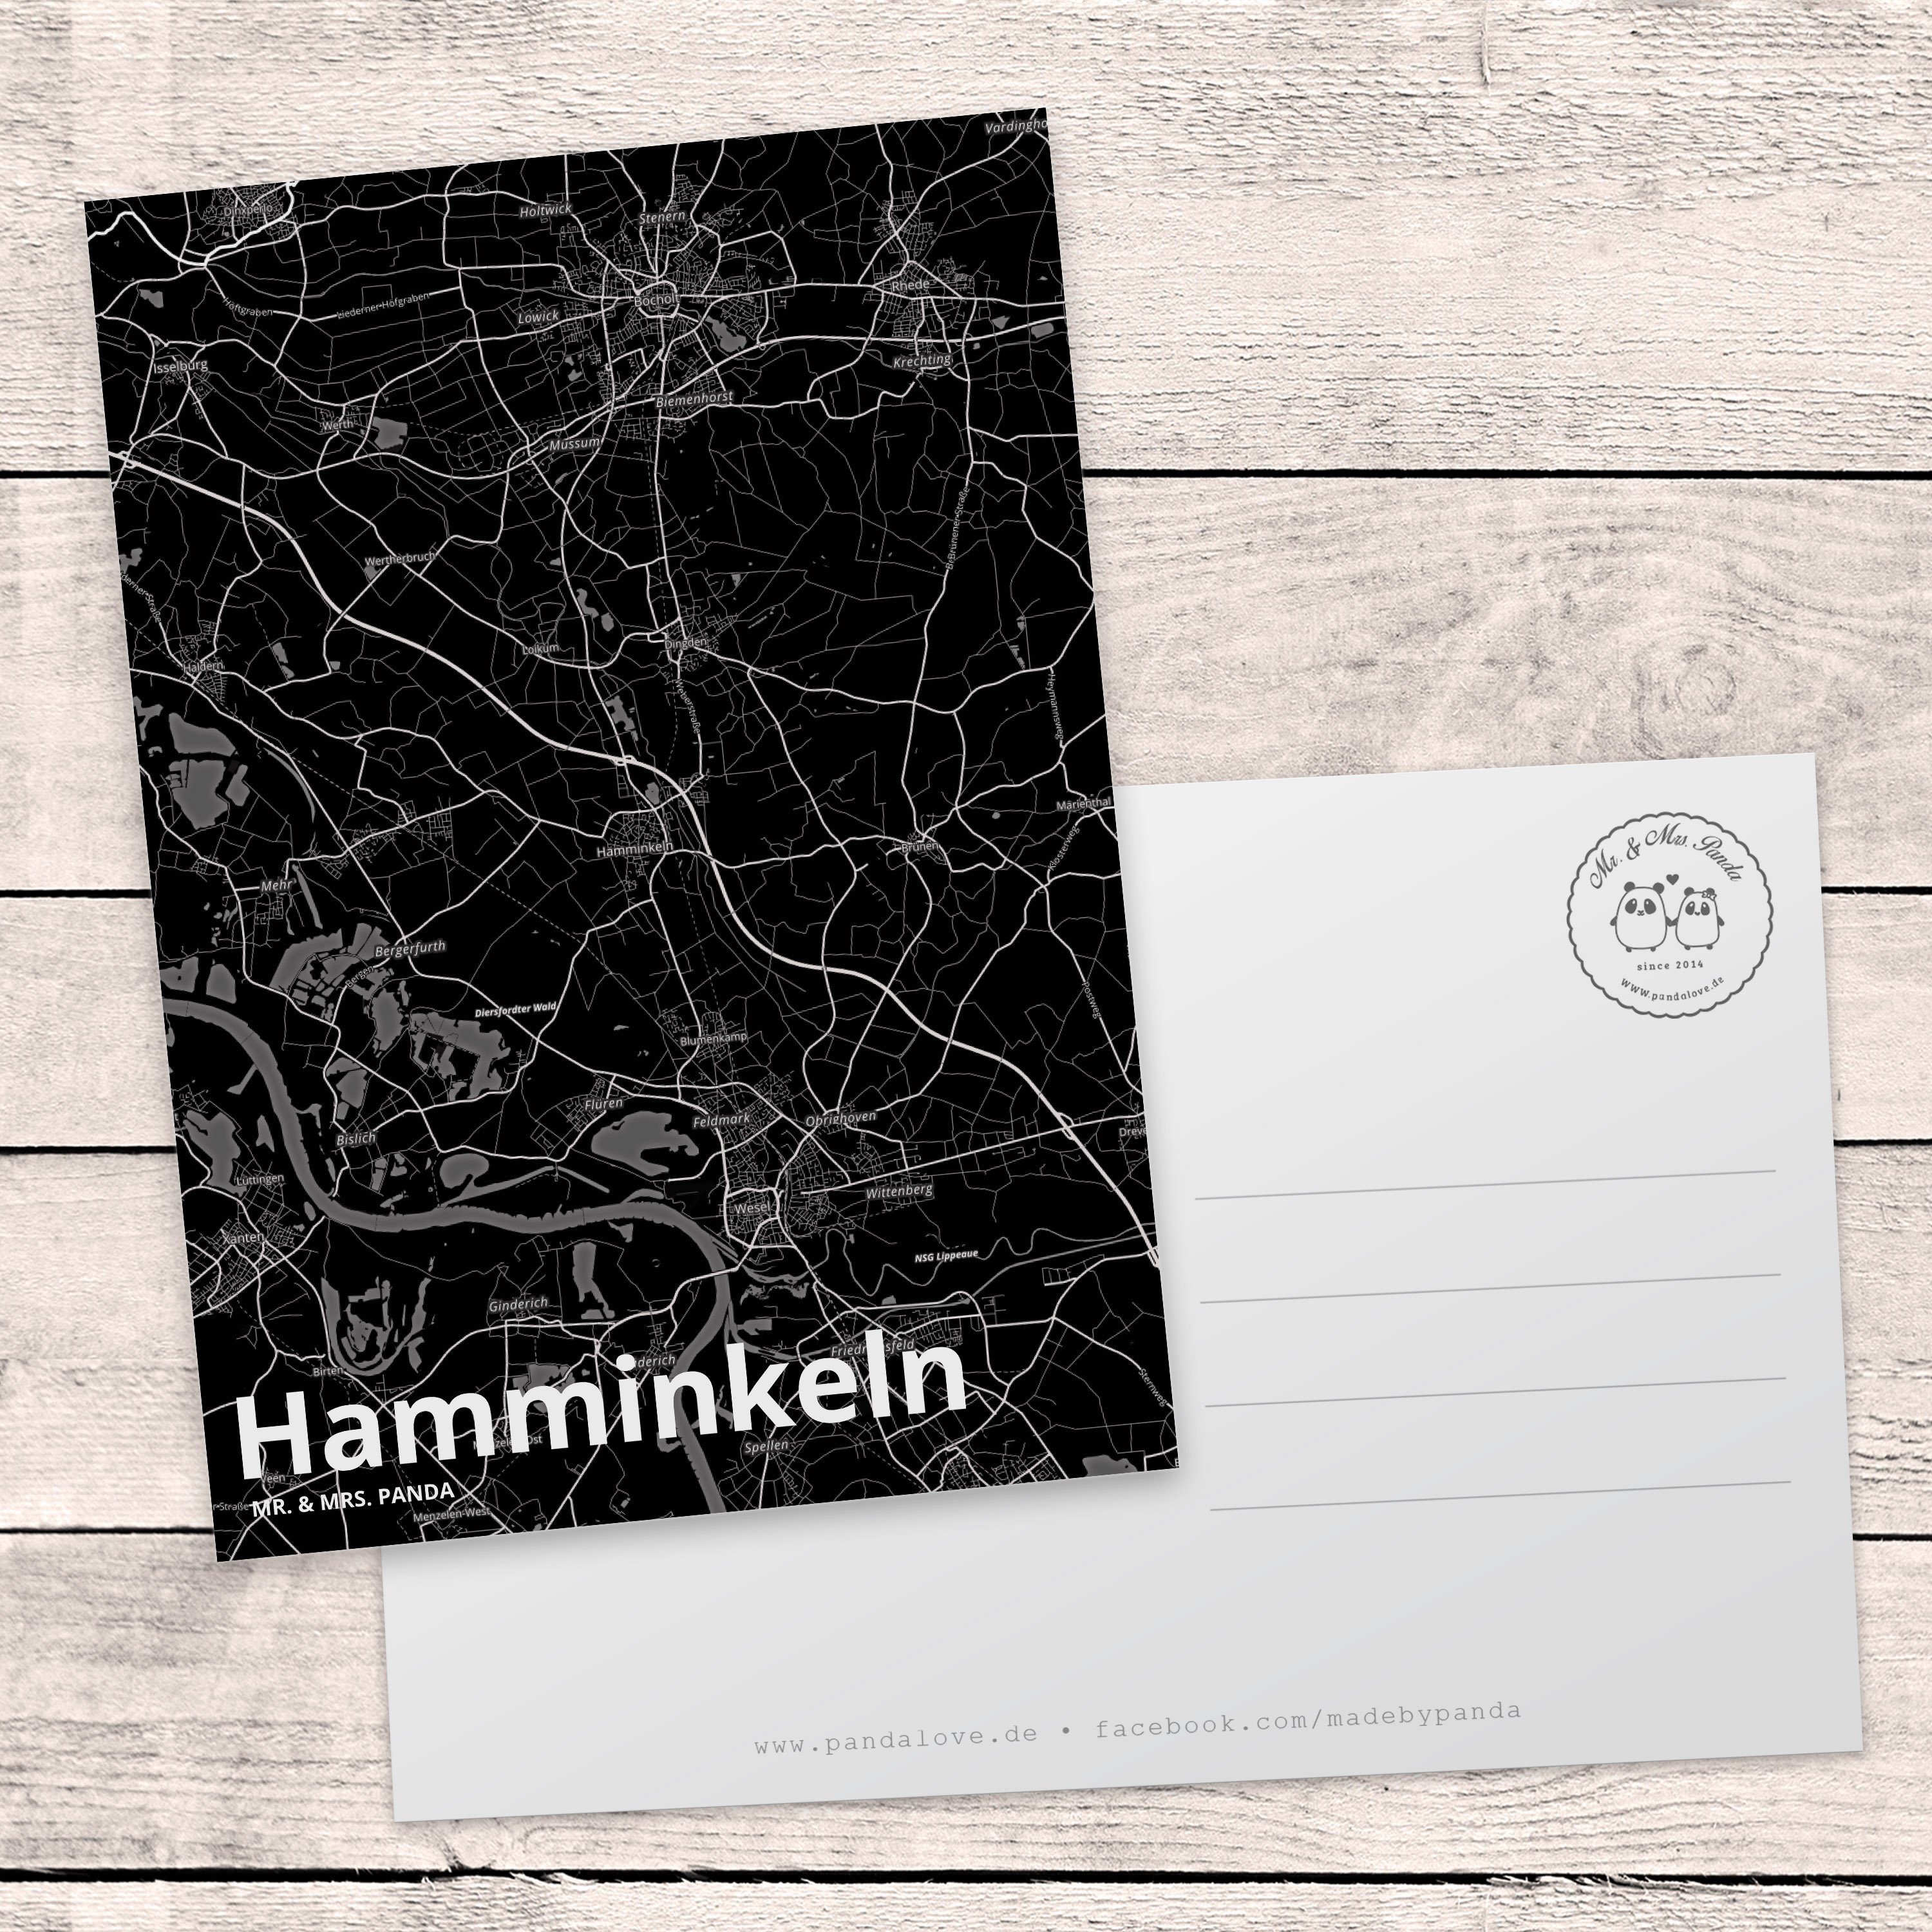 Mr. & Mrs. Geschenk, S Ort, Dorf, Städte, Einladung, Hamminkeln Postkarte Panda - Ansichtskarte